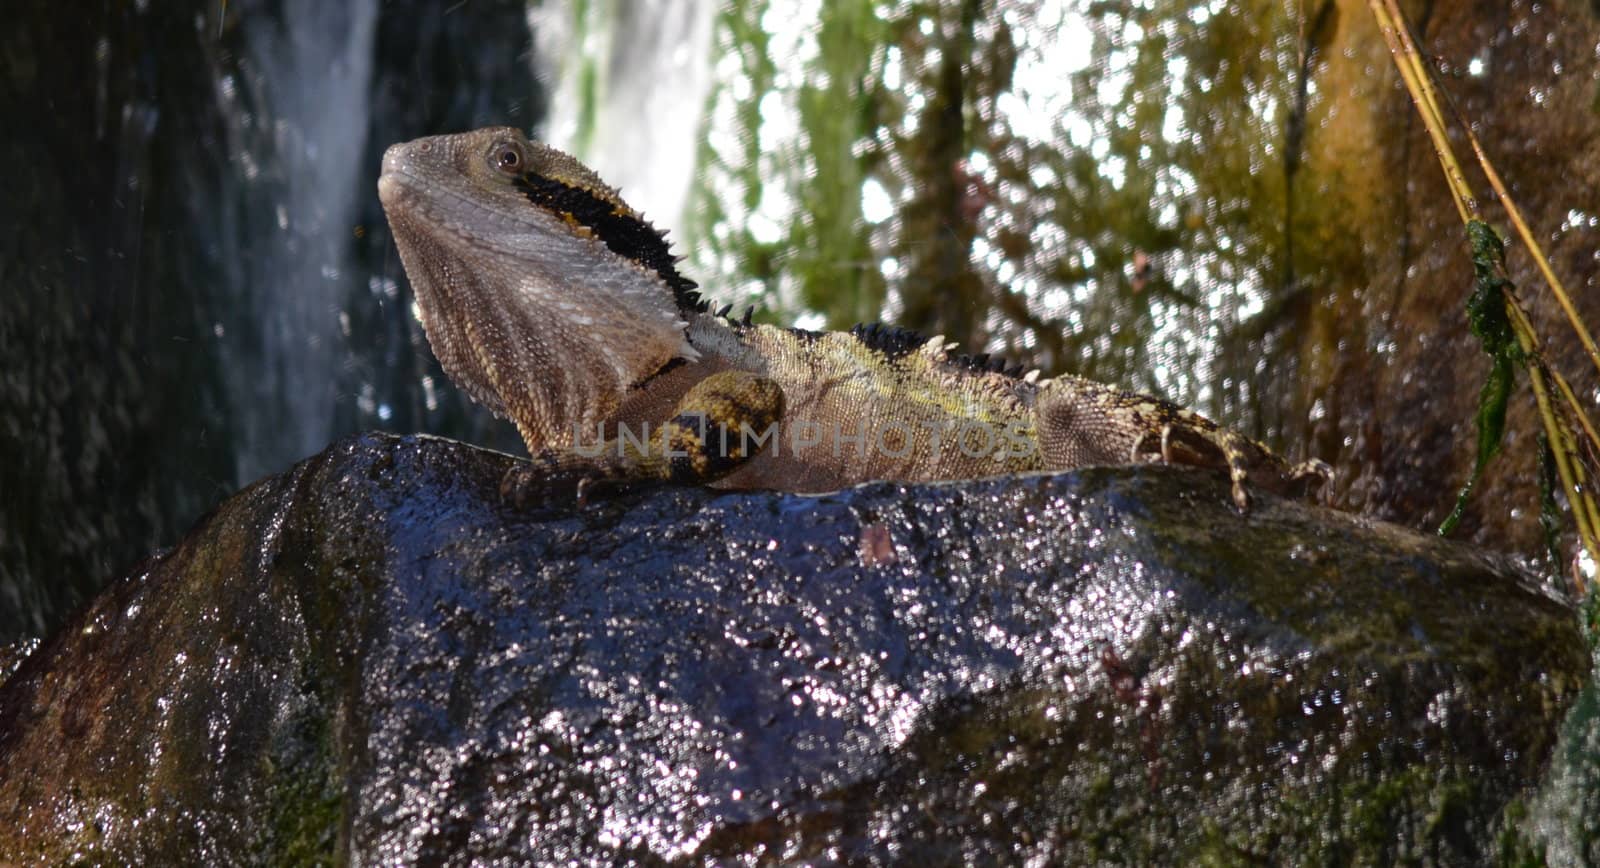 Austalian Lizard by KirbyWalkerPhotos